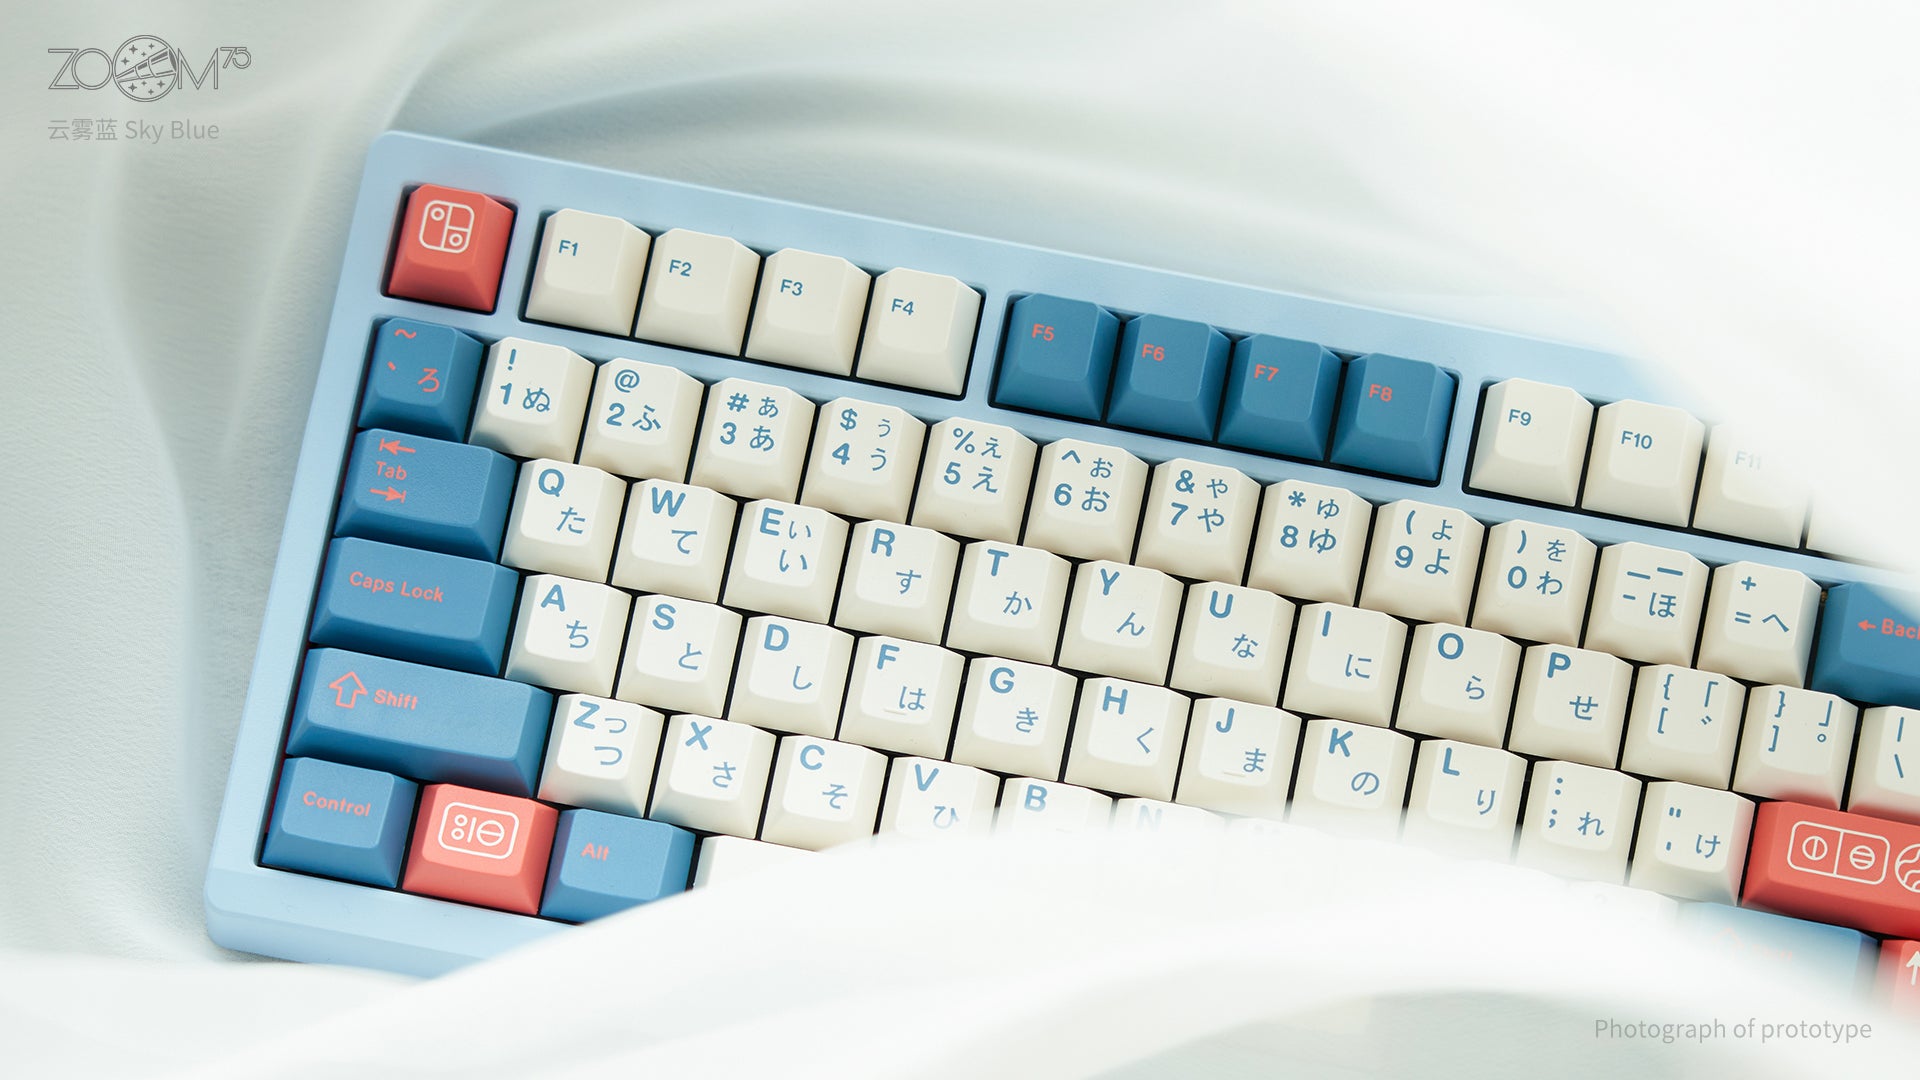 Zoom75 EE Keyboard - Sky Blue [Preorder]